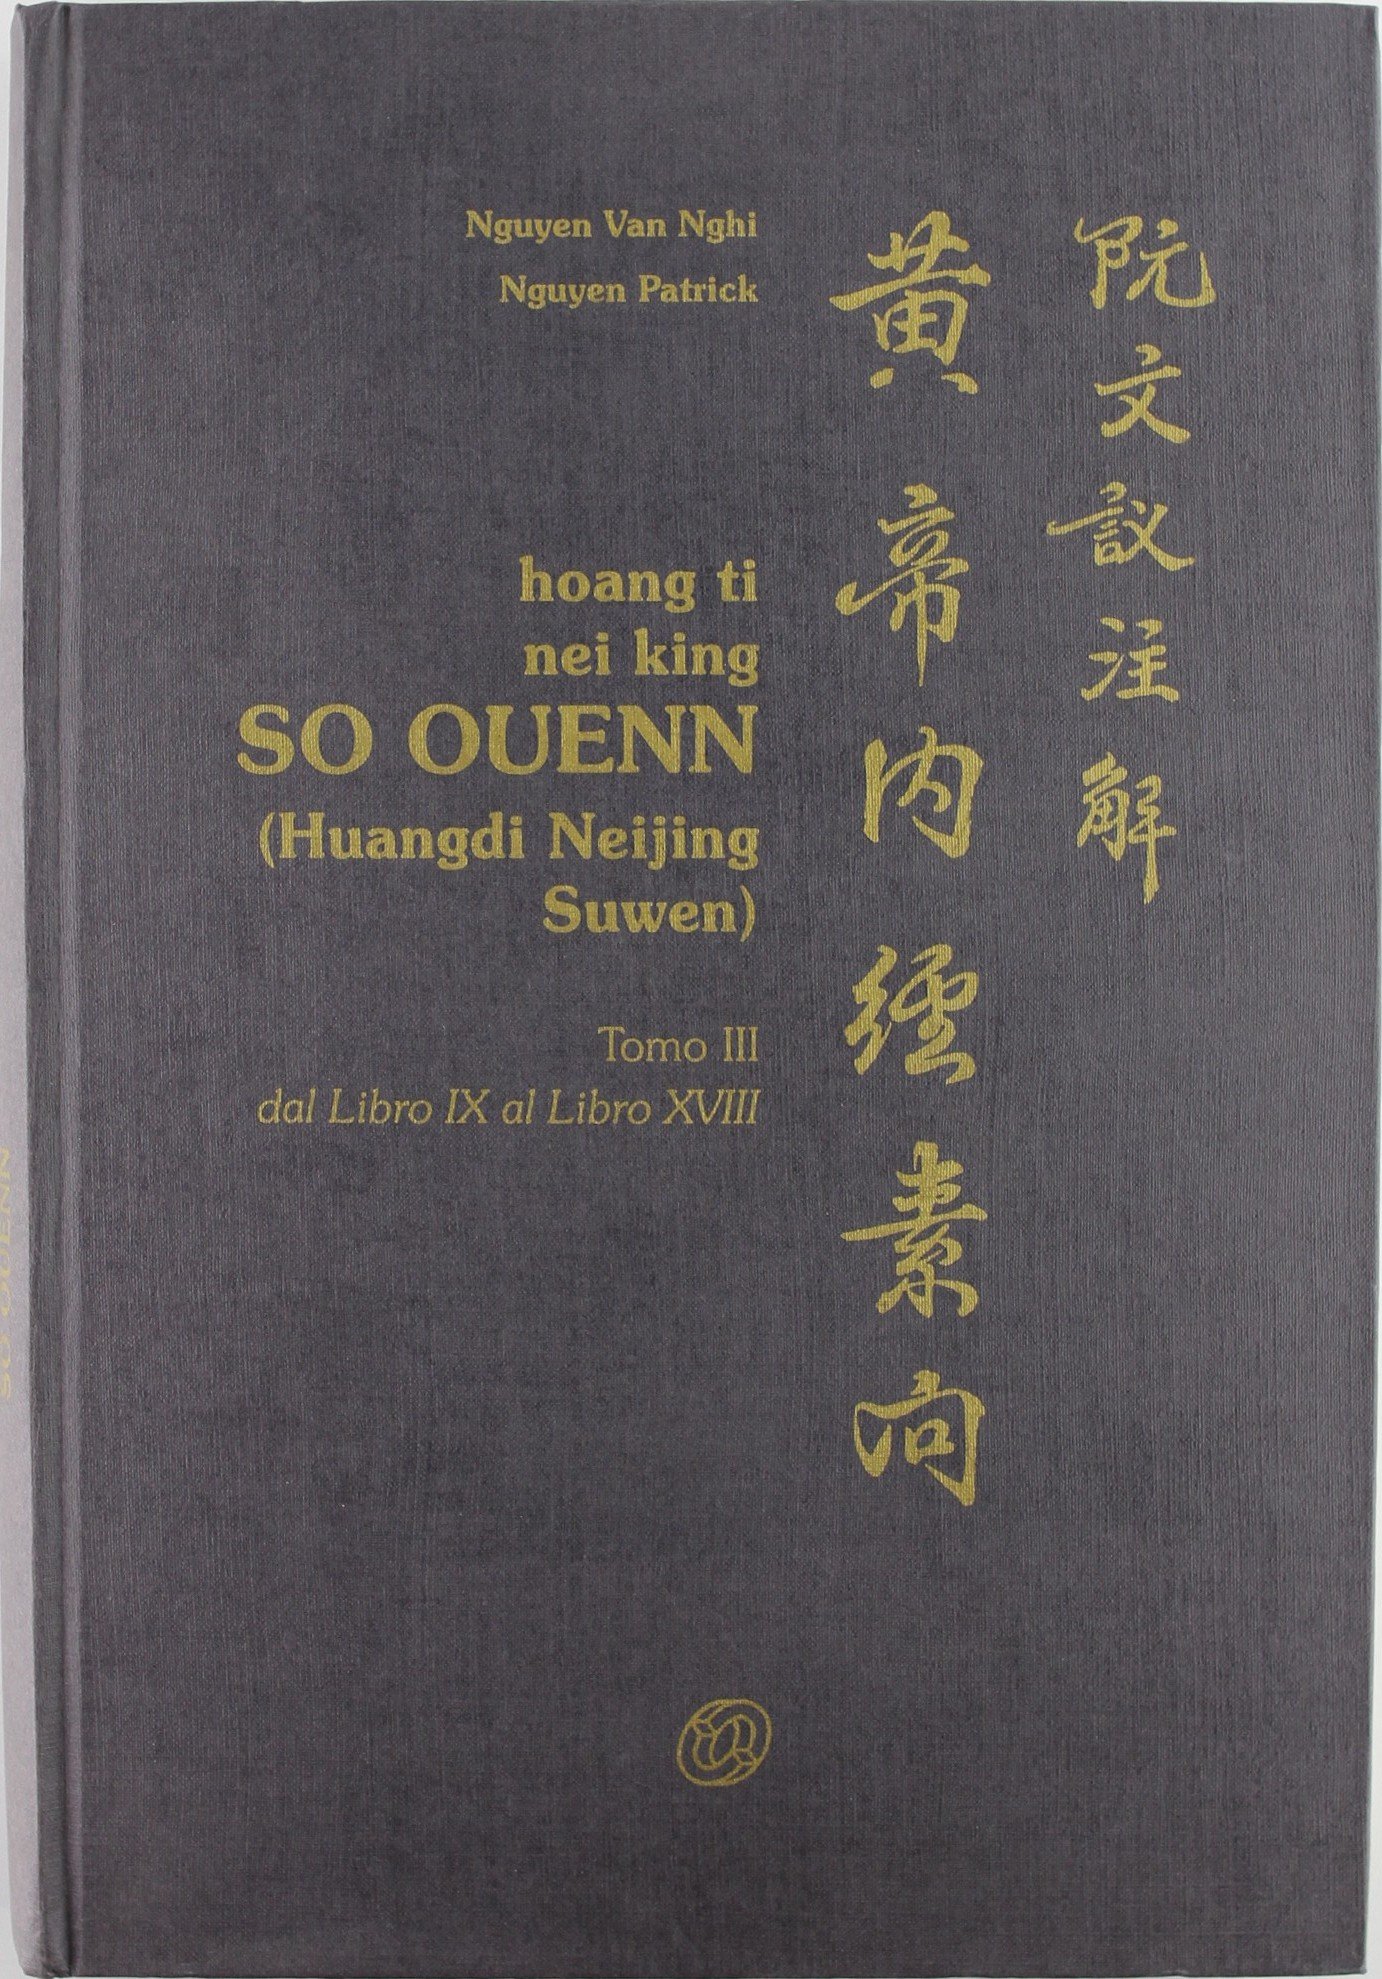 Libri Nguyen Van Nghi / Patrick Nguyen - Hoang Ti Nei King So Ouenn Vol 03 NUOVO SIGILLATO, EDIZIONE DEL 01/02/1999 SUBITO DISPONIBILE